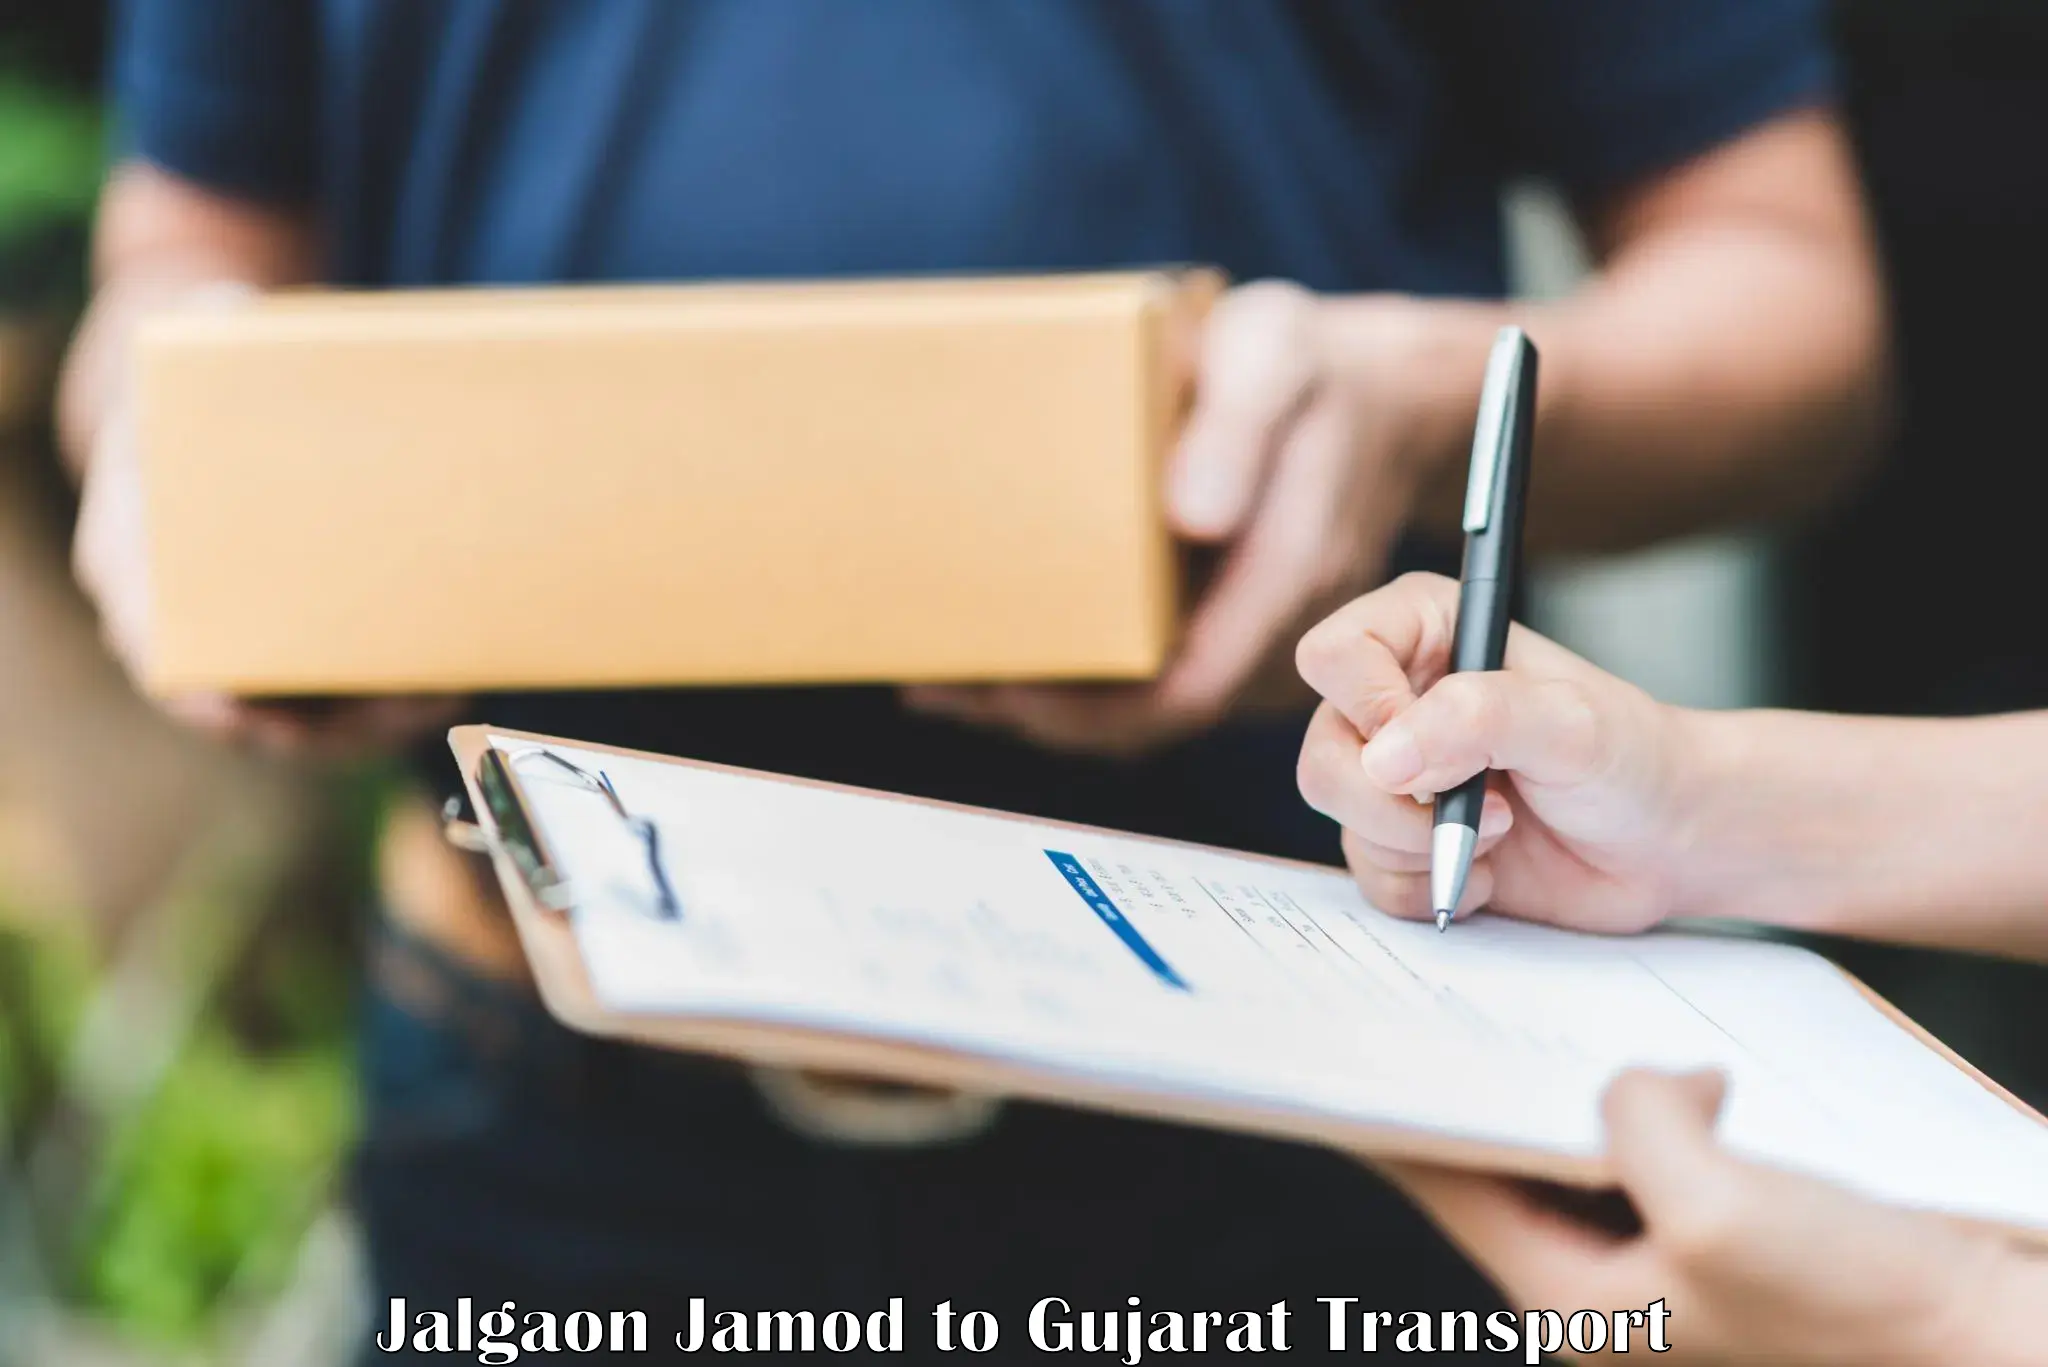 Cycle transportation service Jalgaon Jamod to Umreth